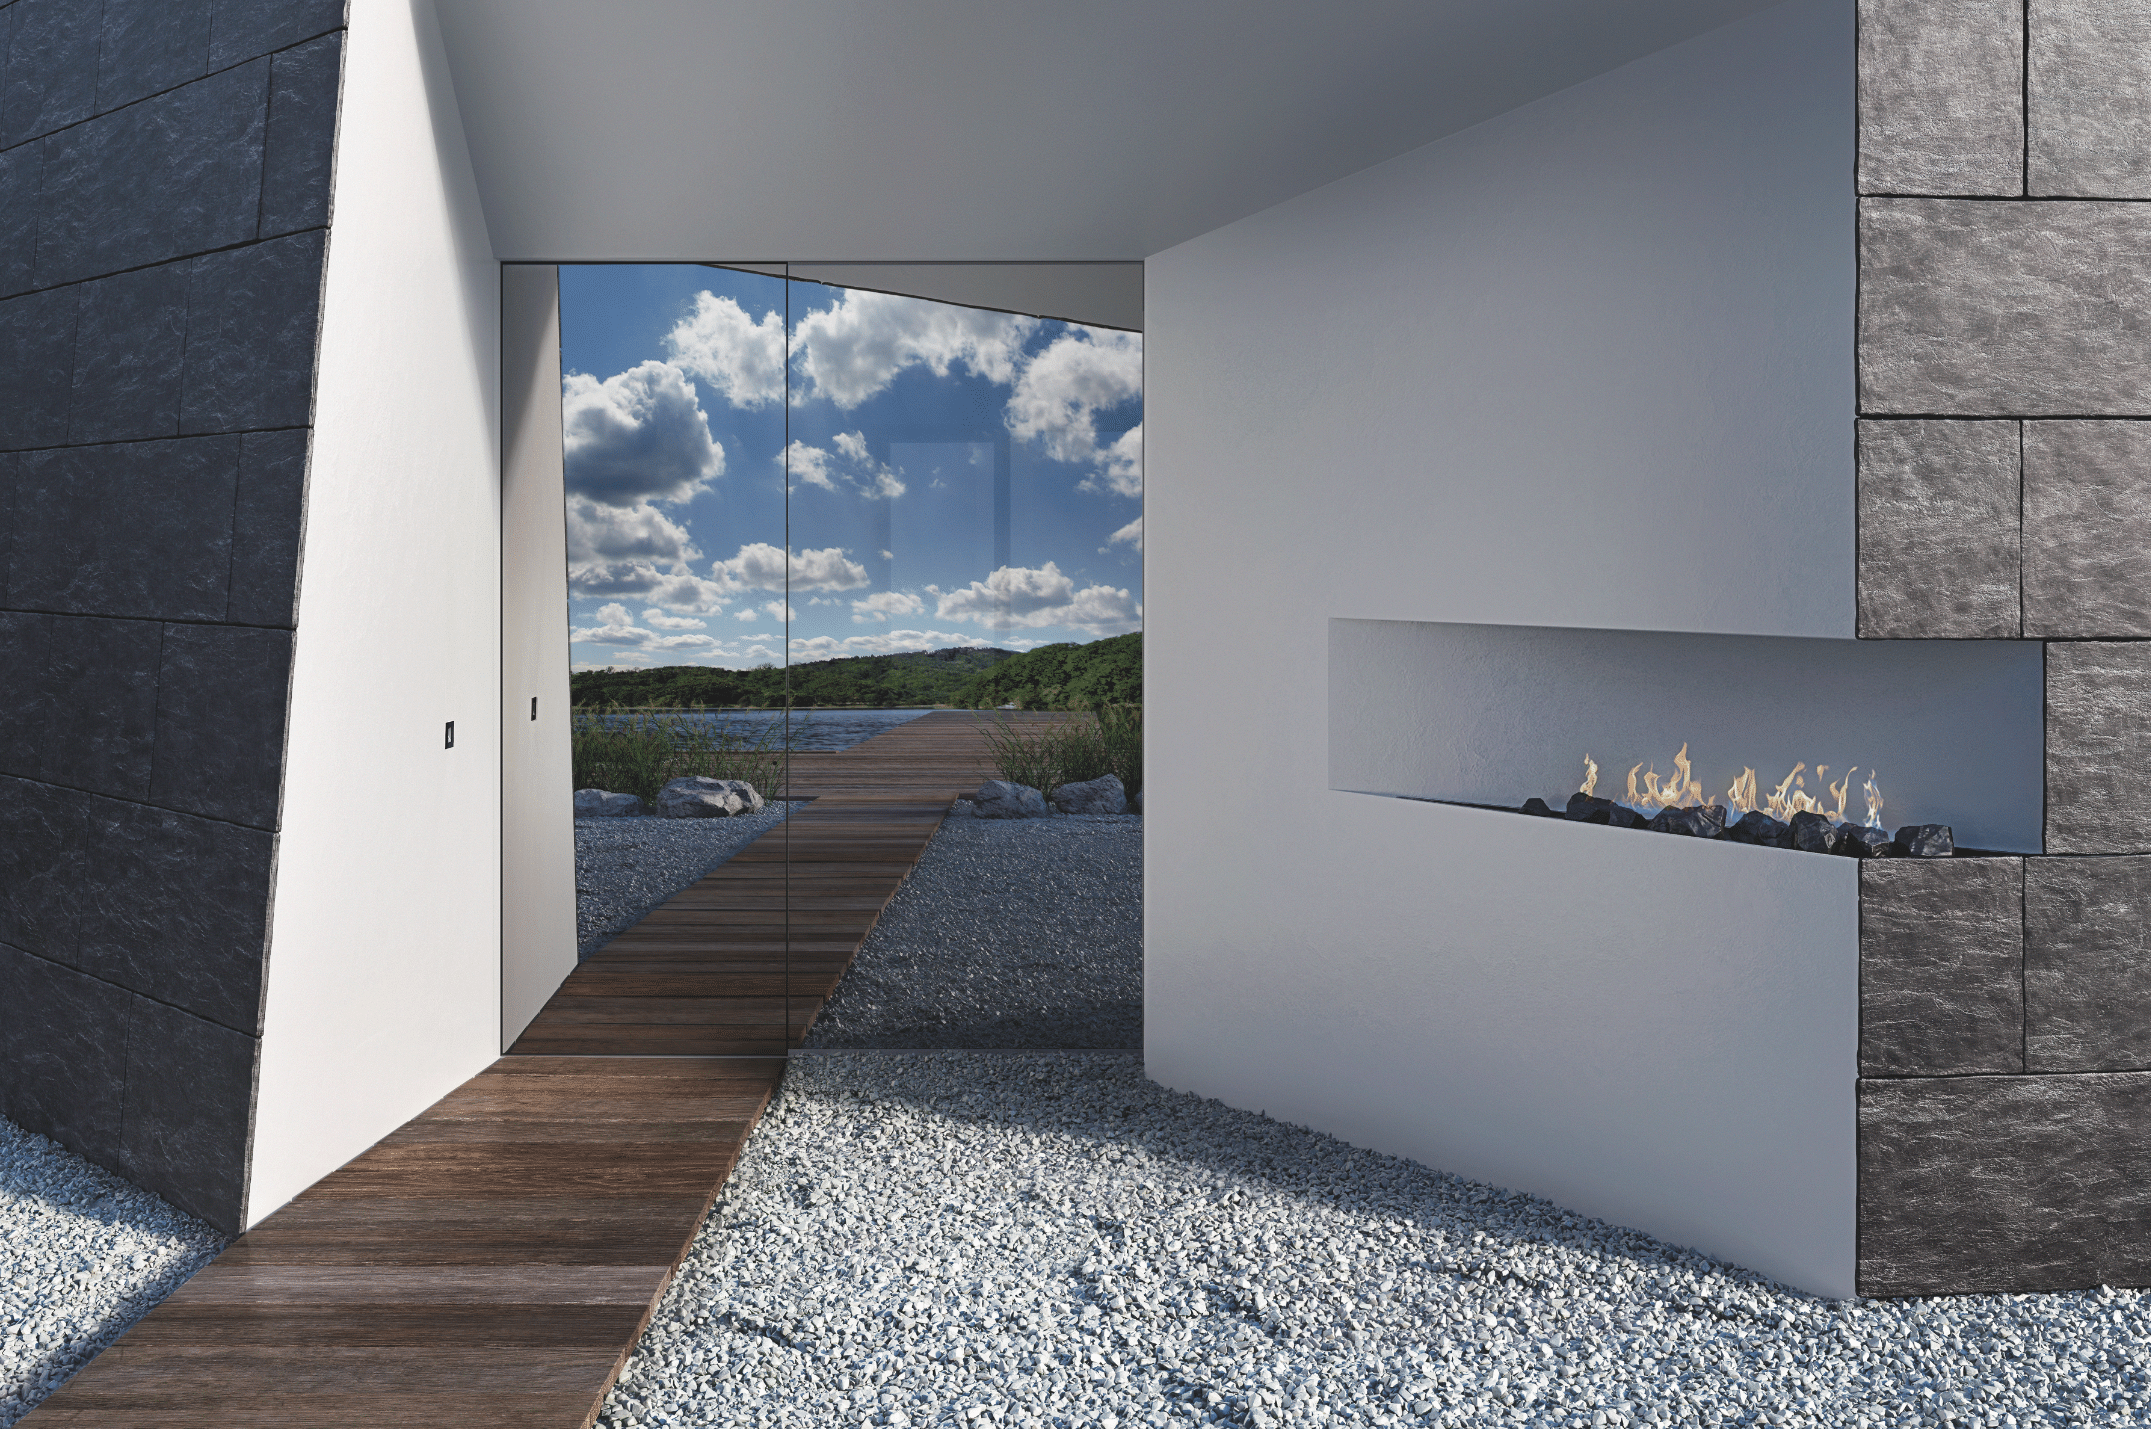 Josko zeigt eine verspiegelte Haustüre die den blauen Himmel mit vielen Wolken reflektiert und mit einem Kamin in der Wand und einem Zugang aus Holzplatten über einem Kiesweg.